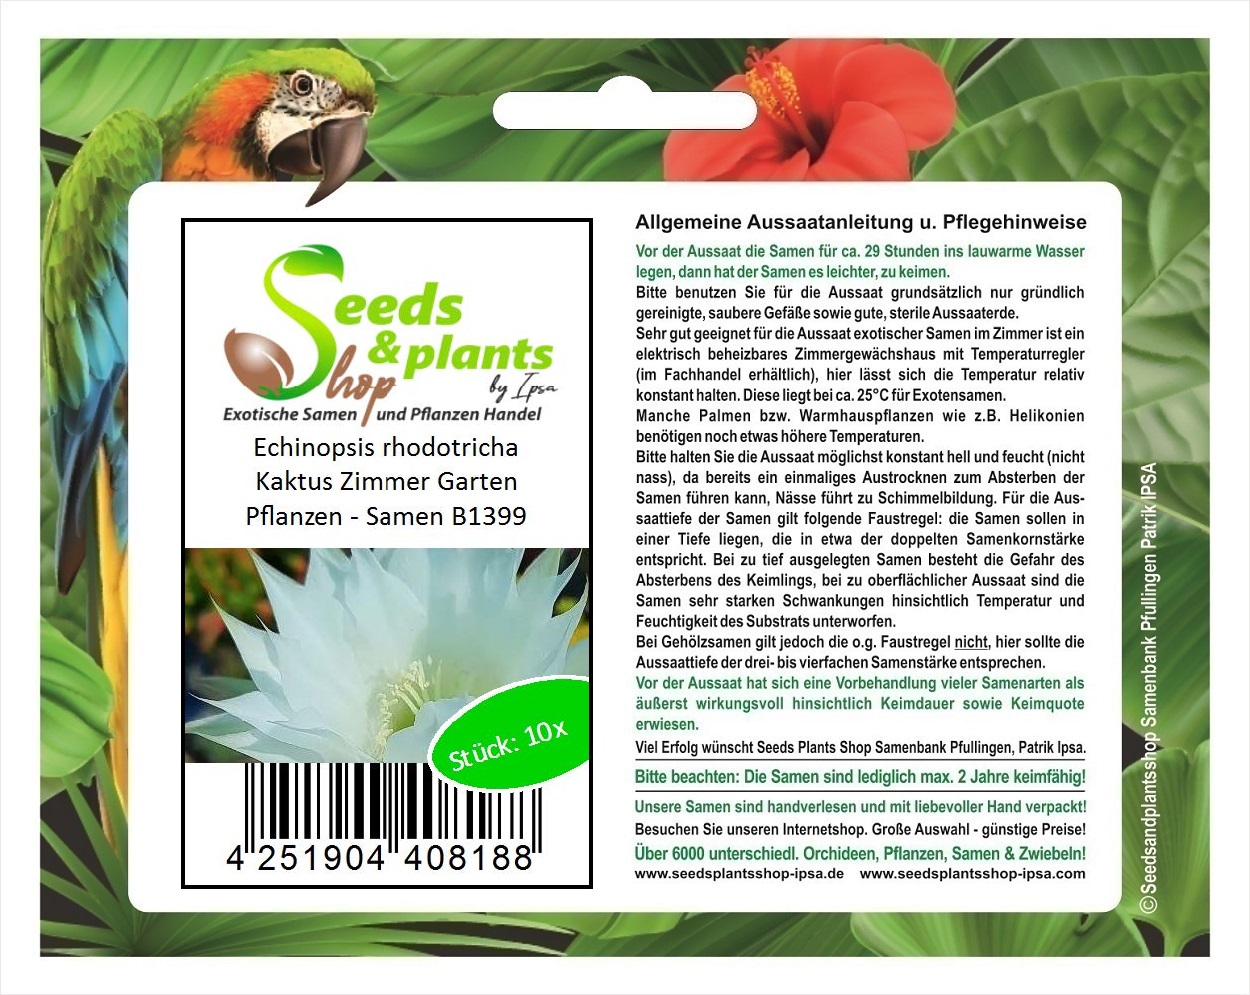 20x Echinopsis rhodotricha Kaktus Zimmer Garten Pflanzen   Samen B20